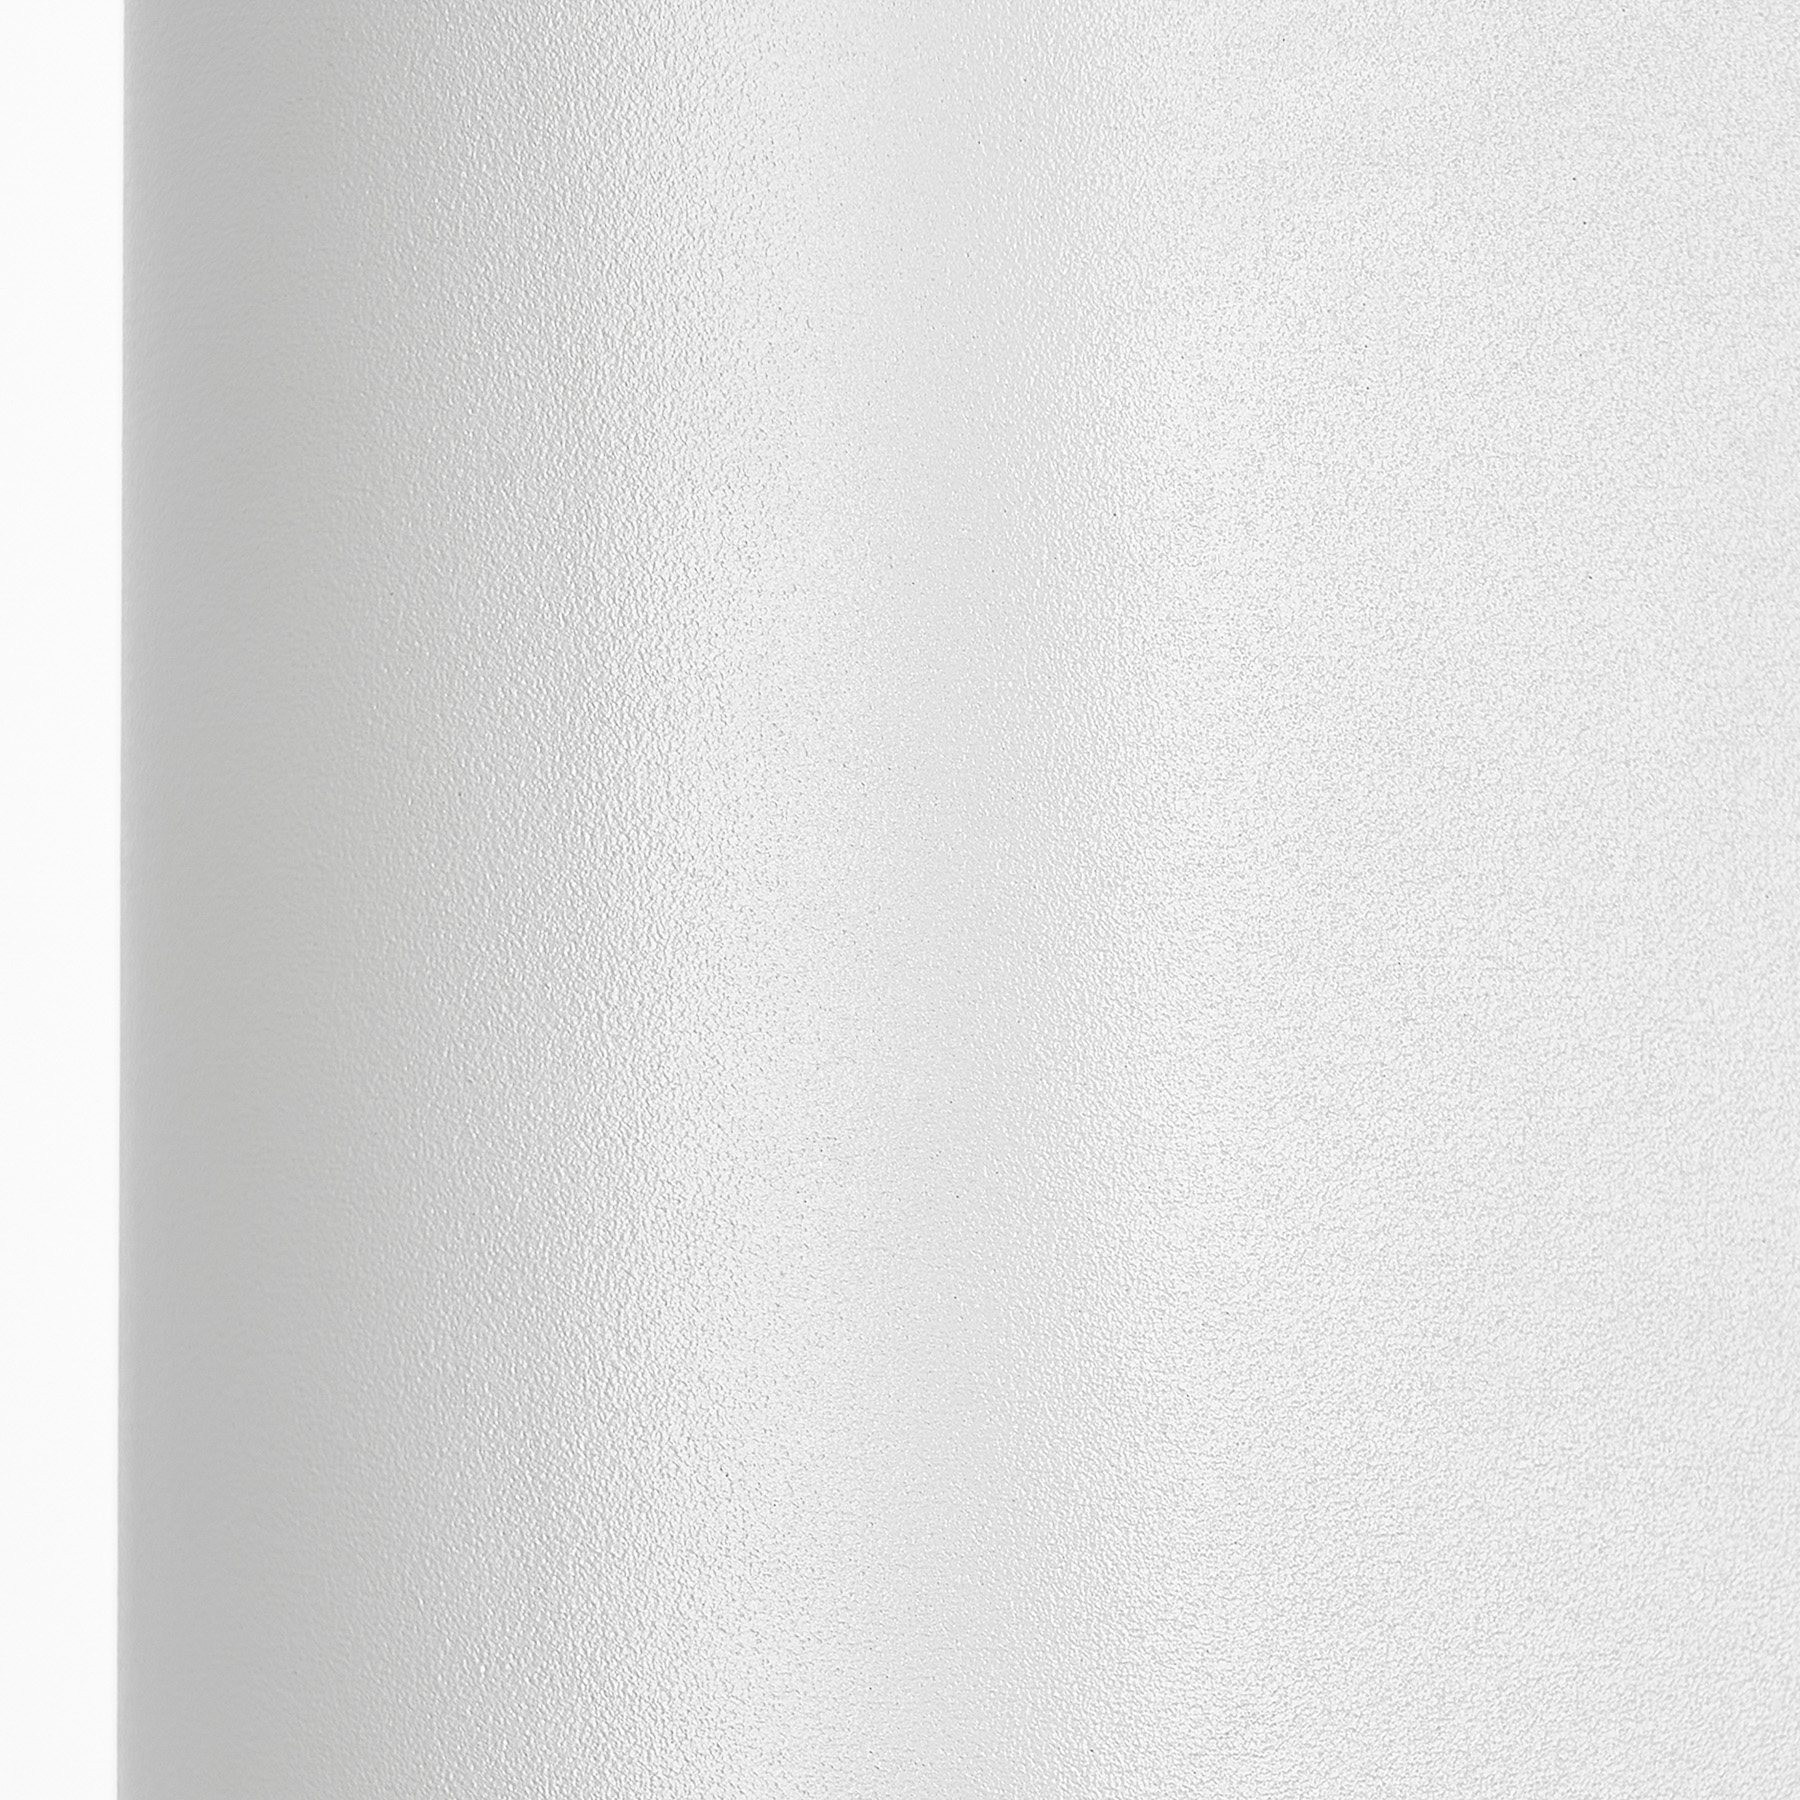 Venkovní nástěnné svítidlo Prios Tetje, bílé, kulaté, 16 cm, sada 4 kusů